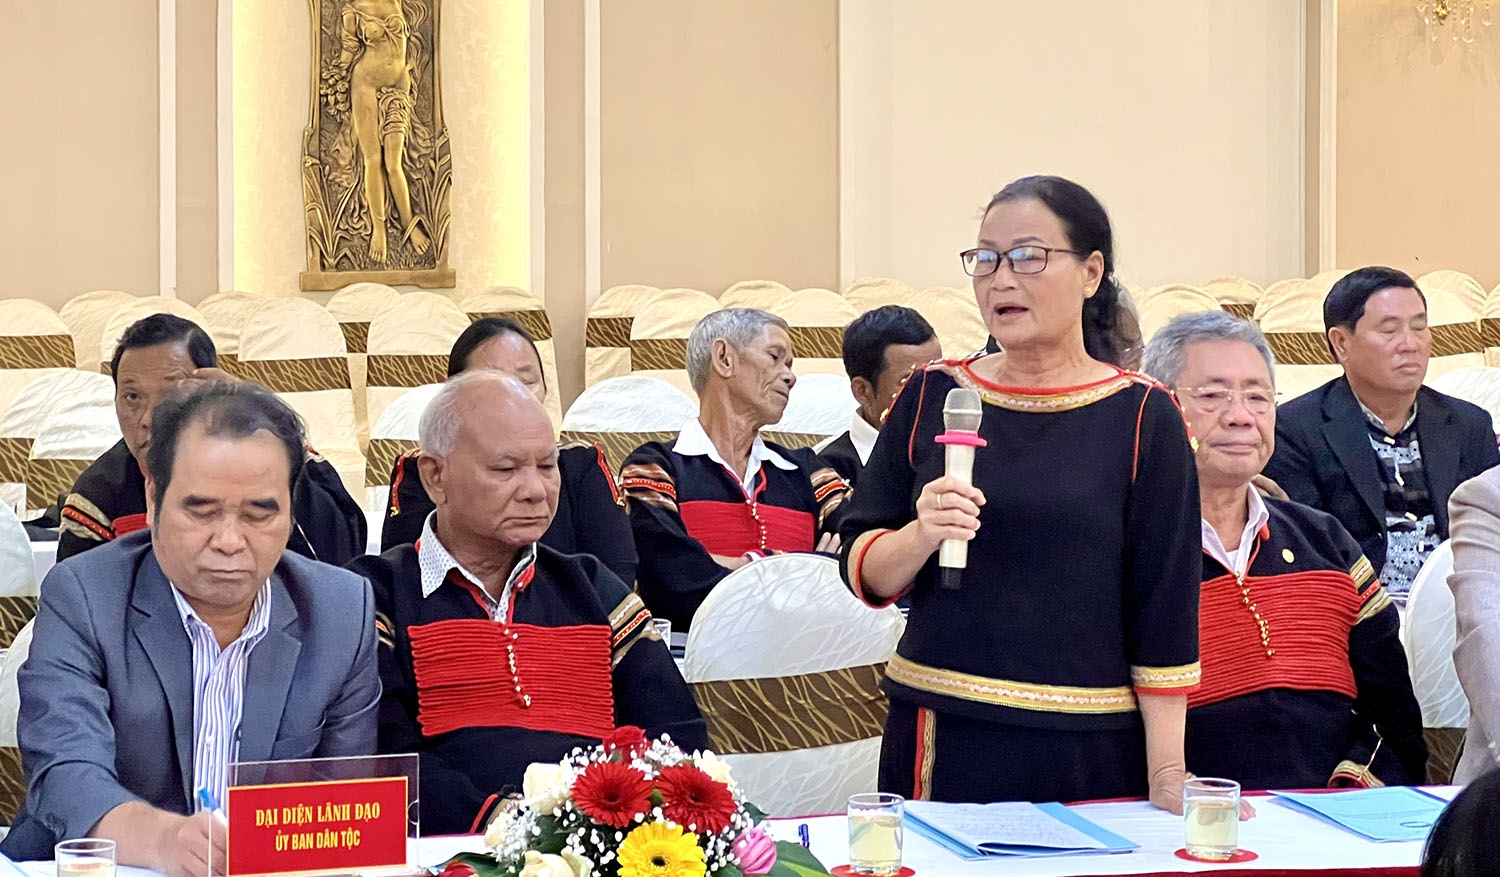 Đại biểu tỉnh Đăk Lăk nguyện vọng và kiến nghị đến với Đoàn Chủ tịch Ủy ban Trung ương MTTQ Việt Nam về hỗ trợ đất sản xuất, nhà ở và việc làm cho đồng bào DTTS